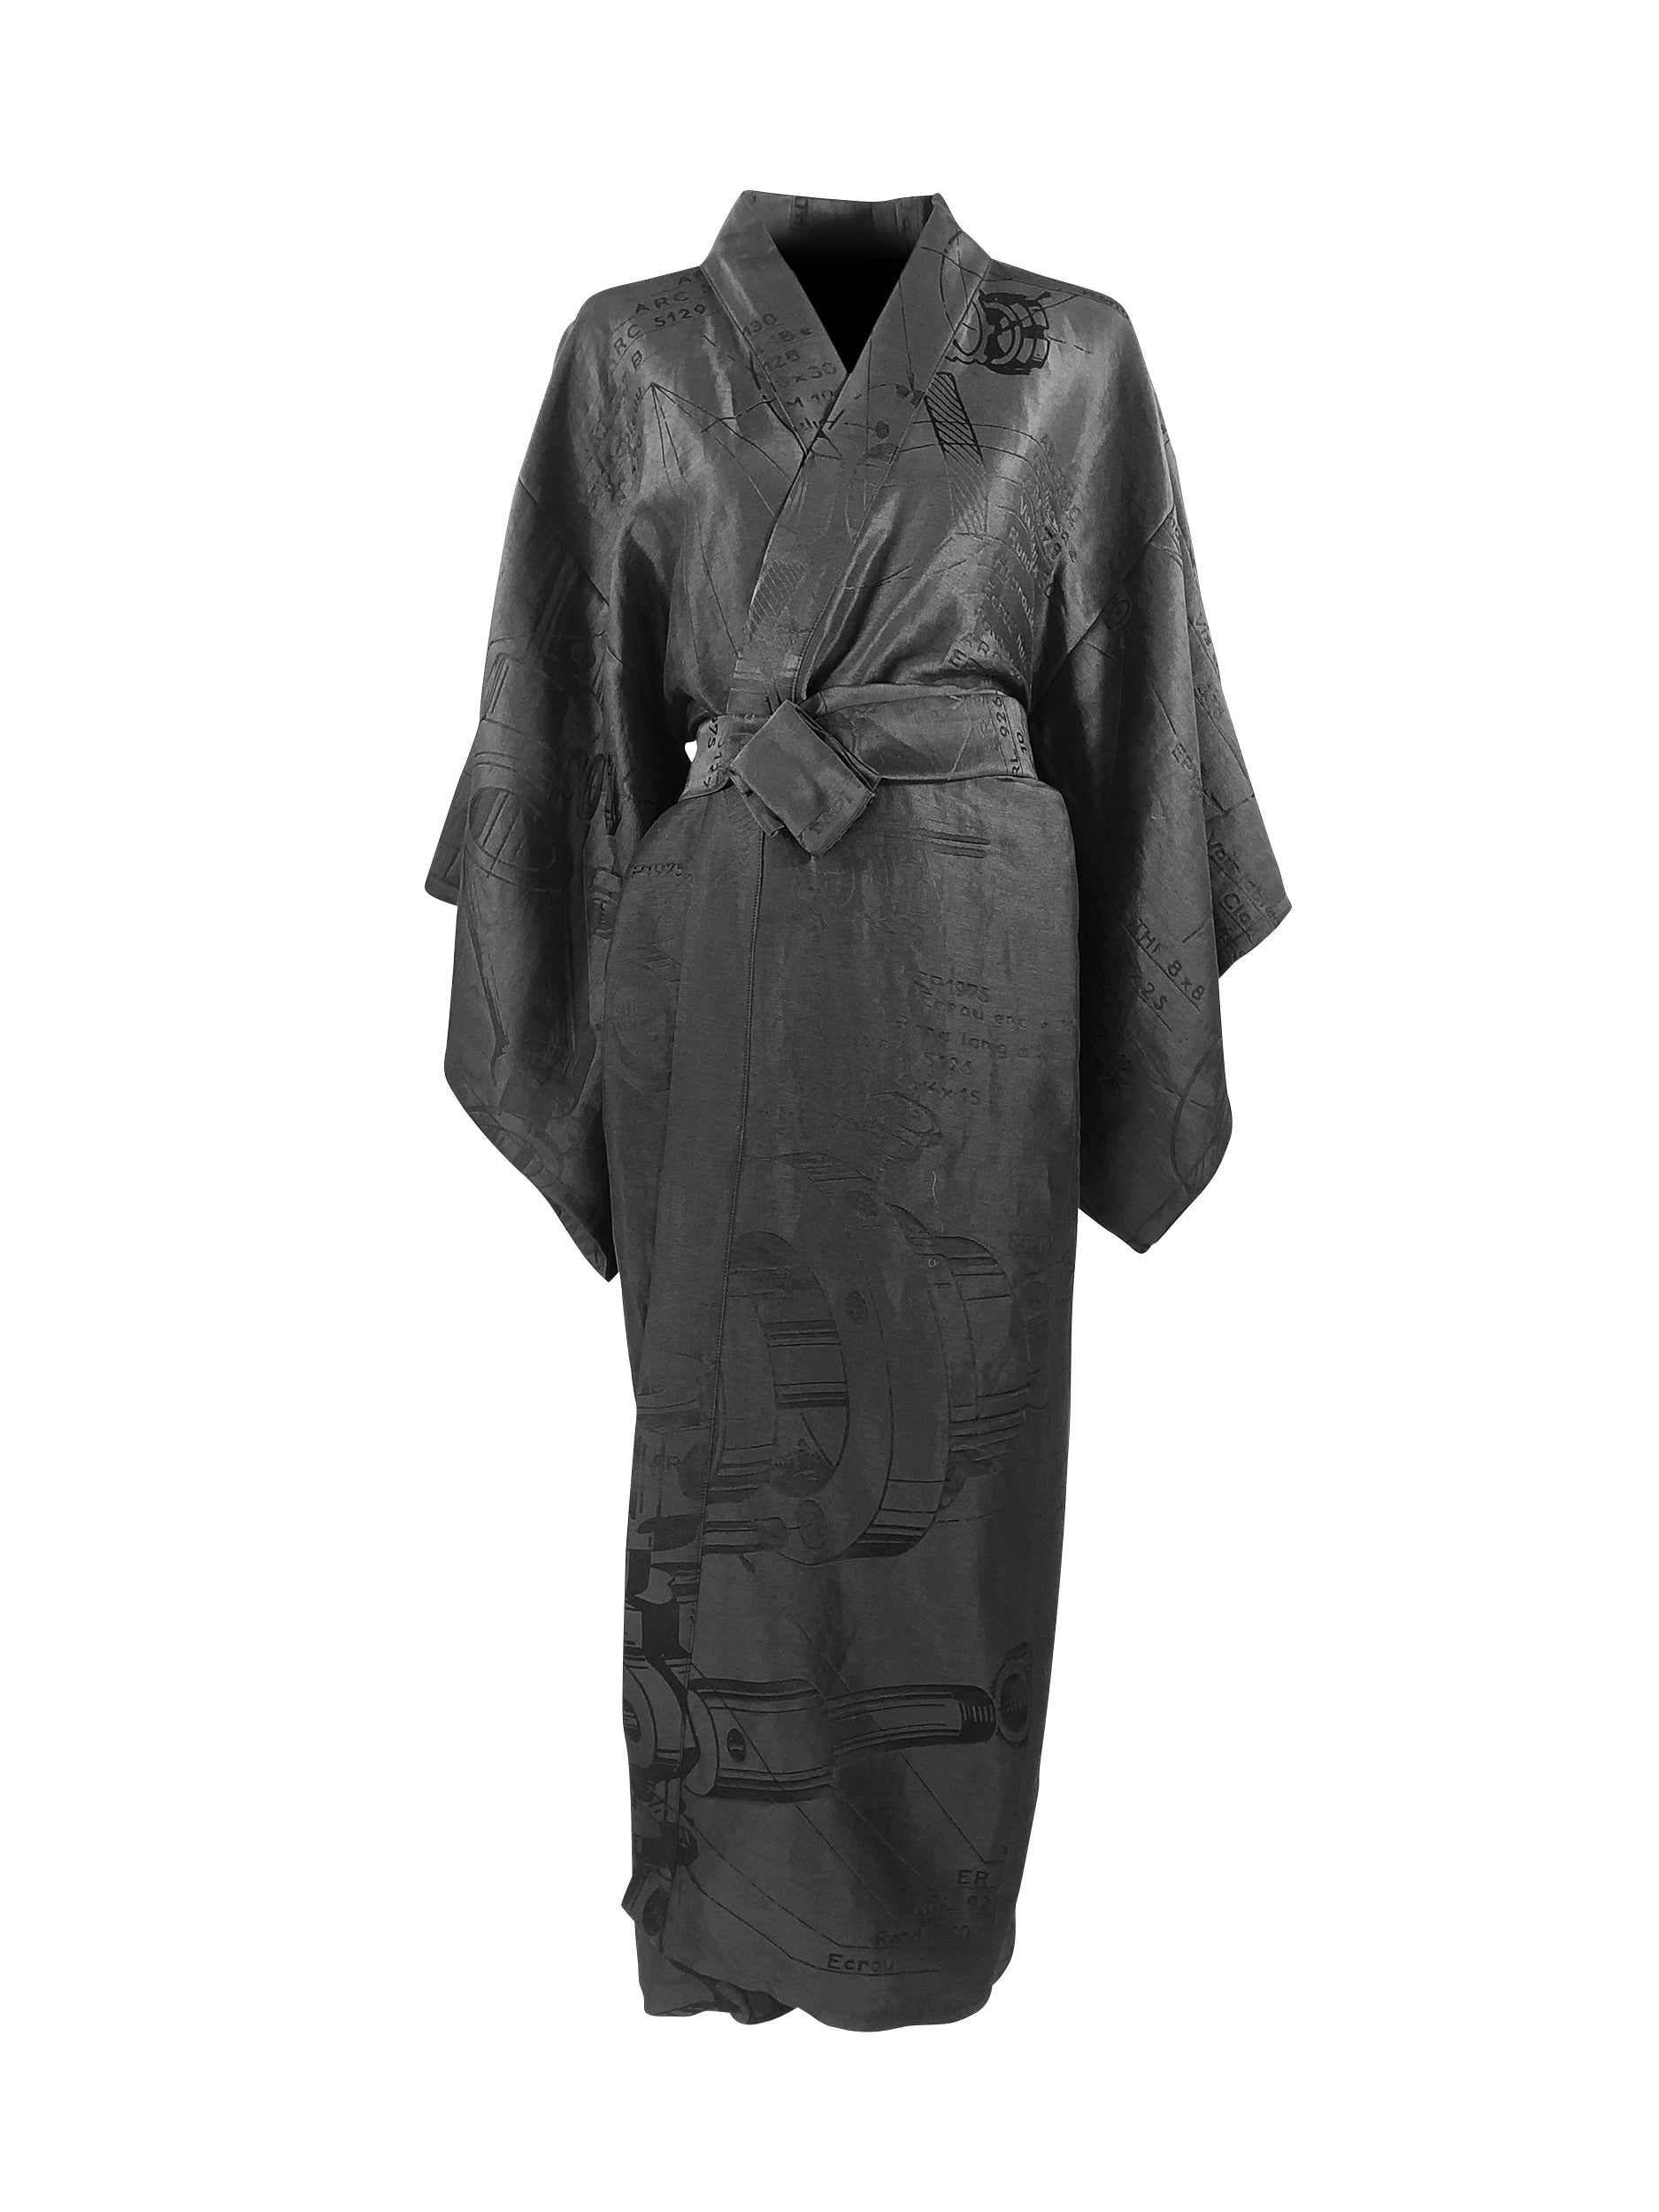 MACHINE LONG - Kimono - Men